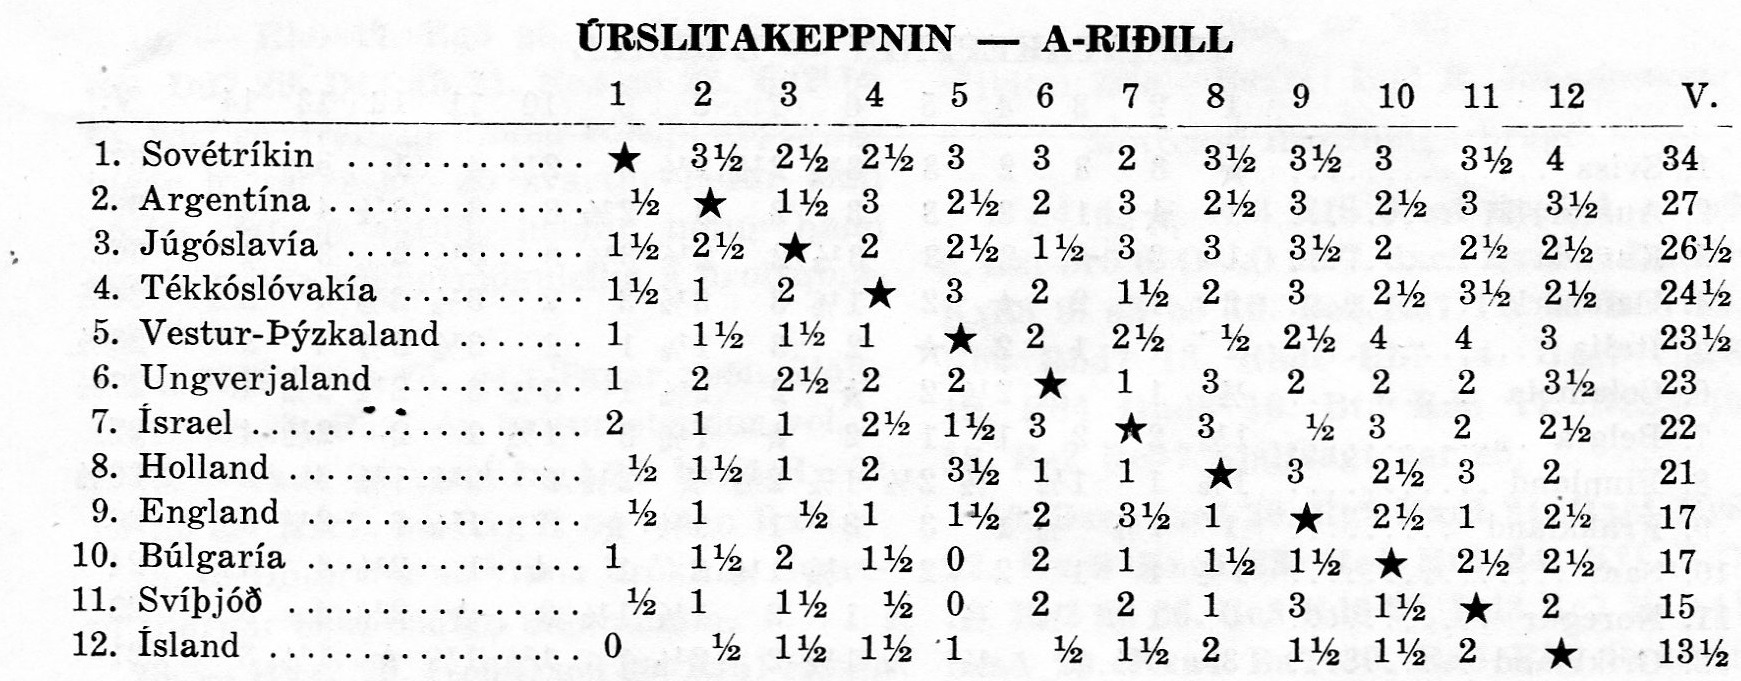 1954 Ólympíumótið í Amsterdam - úrslit i A-riðli